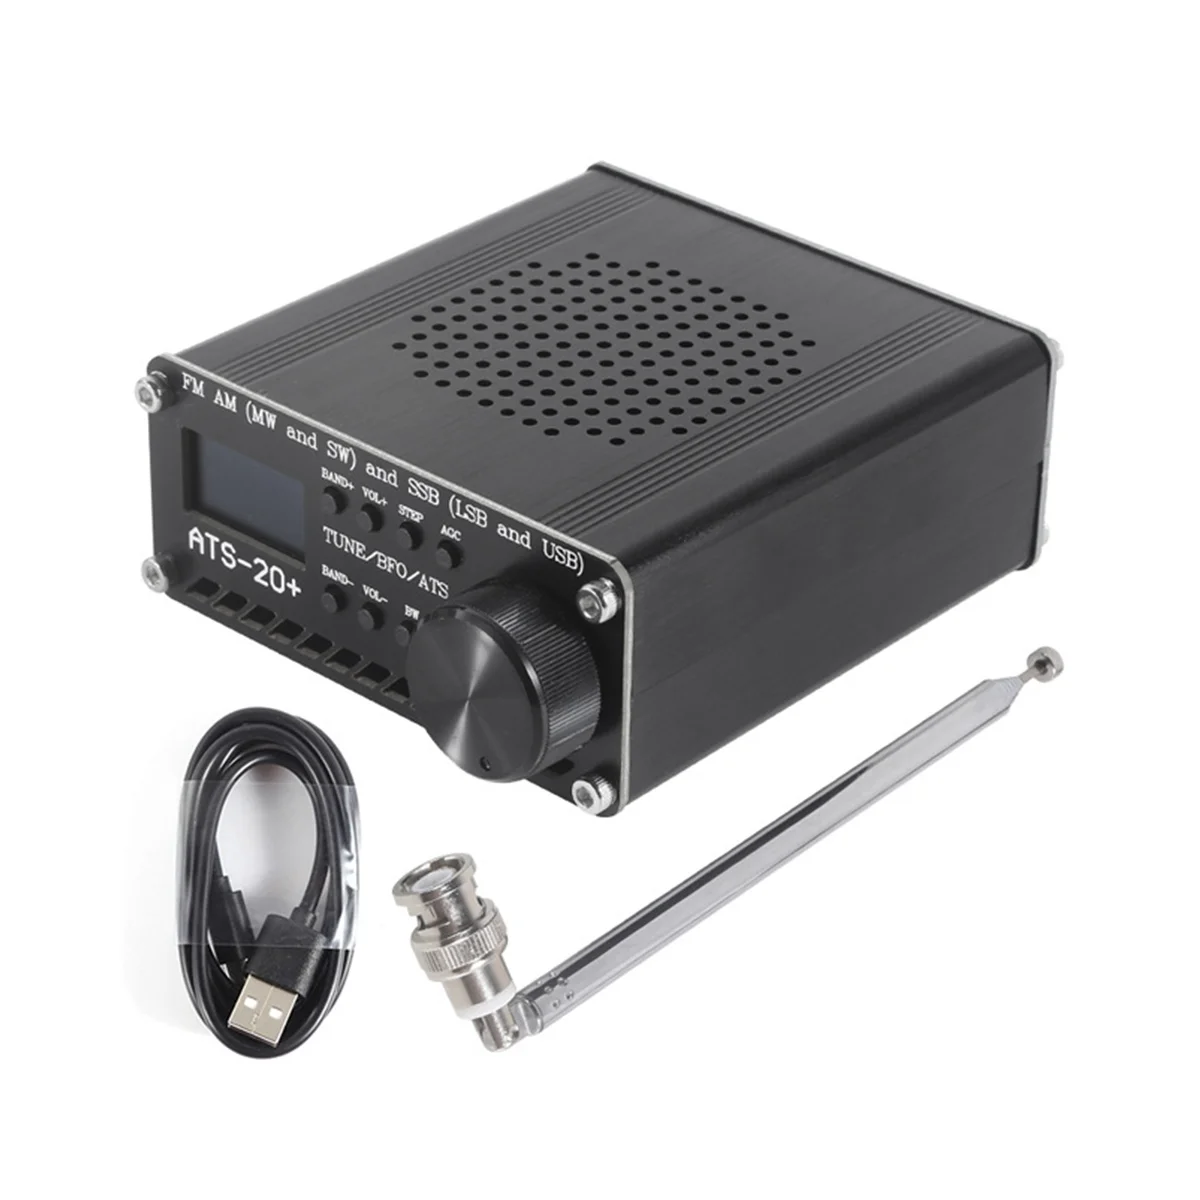 

Si4732 ATS-20 + ATS20 портативный коротковолновый радиоприемник DSP SDR приемник FM AM (MW SW) и SSB (LSB USB) с антенной